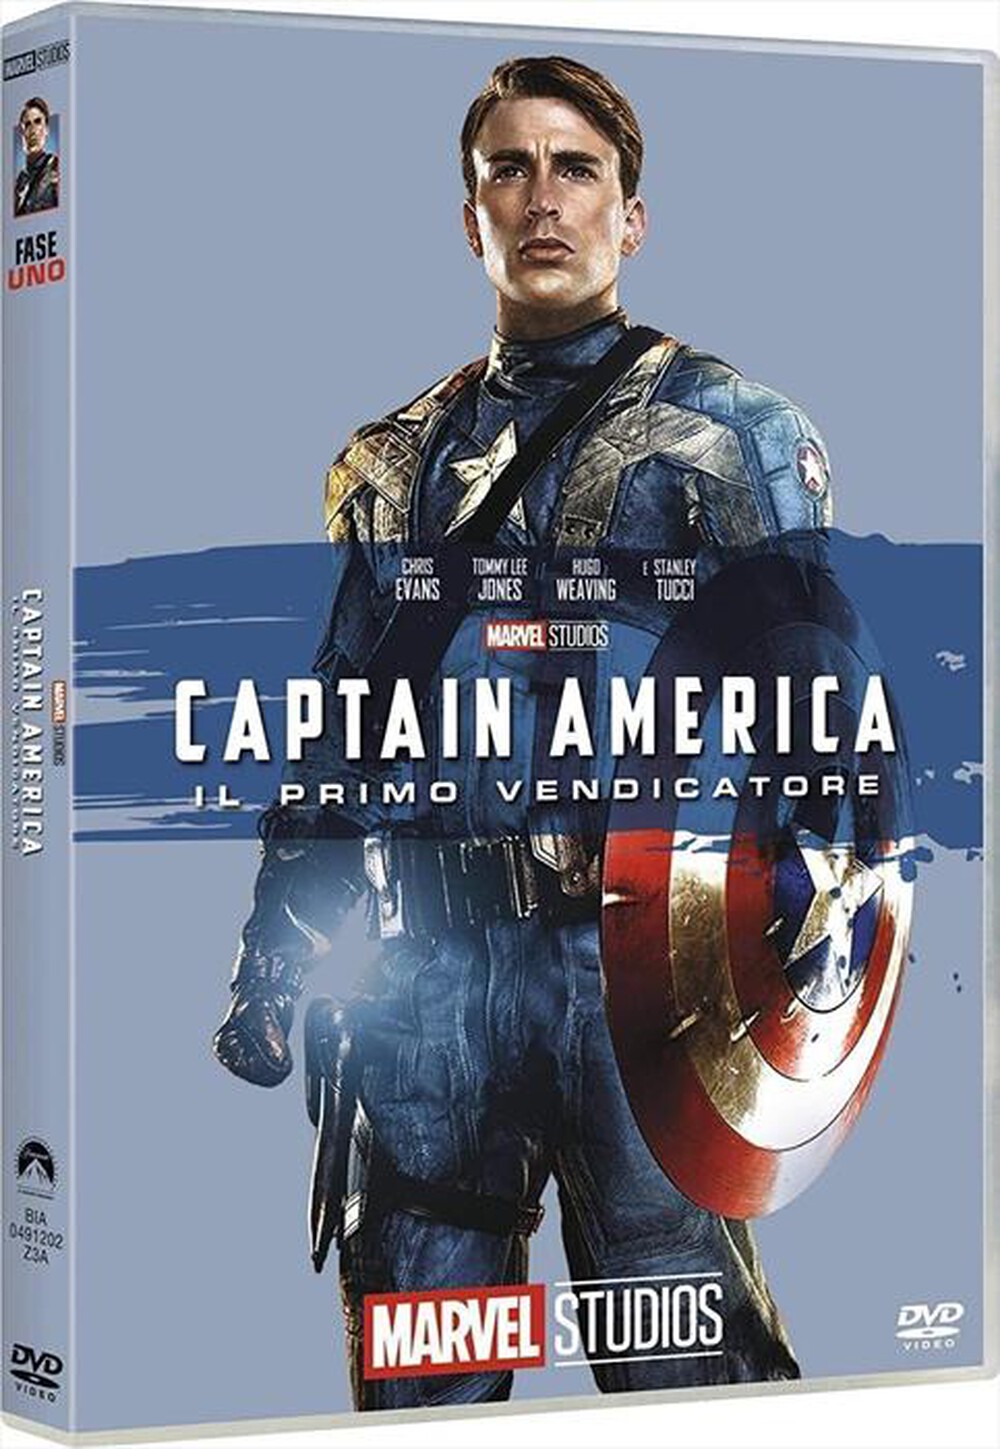 "EAGLE PICTURES - Captain America (Edizione Marvel Studios 10 Anni"